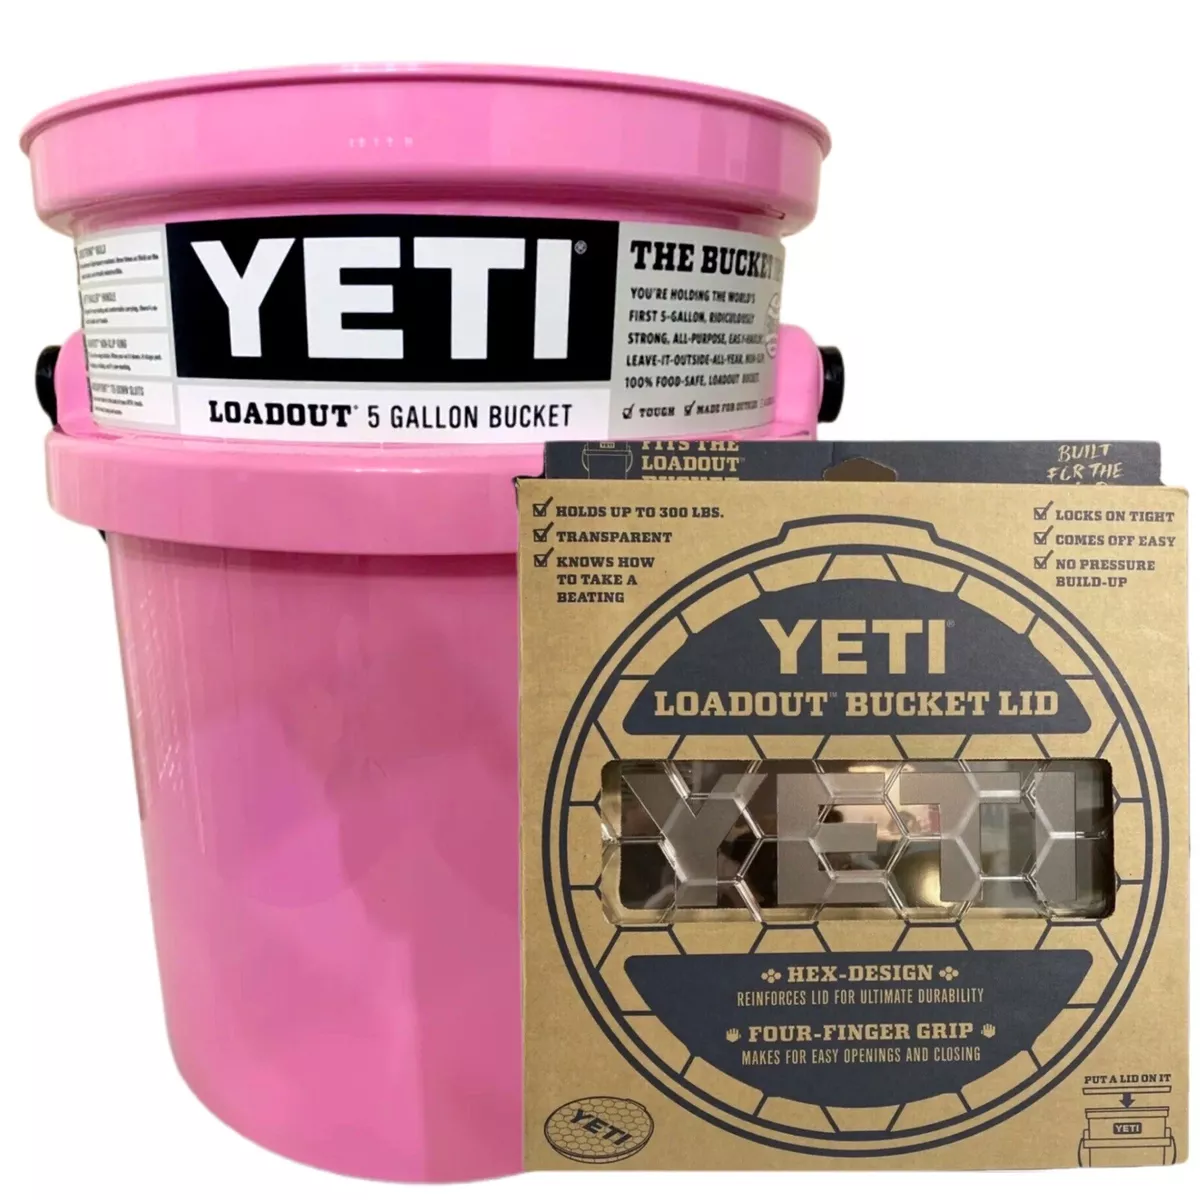 🌟 YETI 5 Gallon Loadout Bucket Ultimate Accessory: The YETI